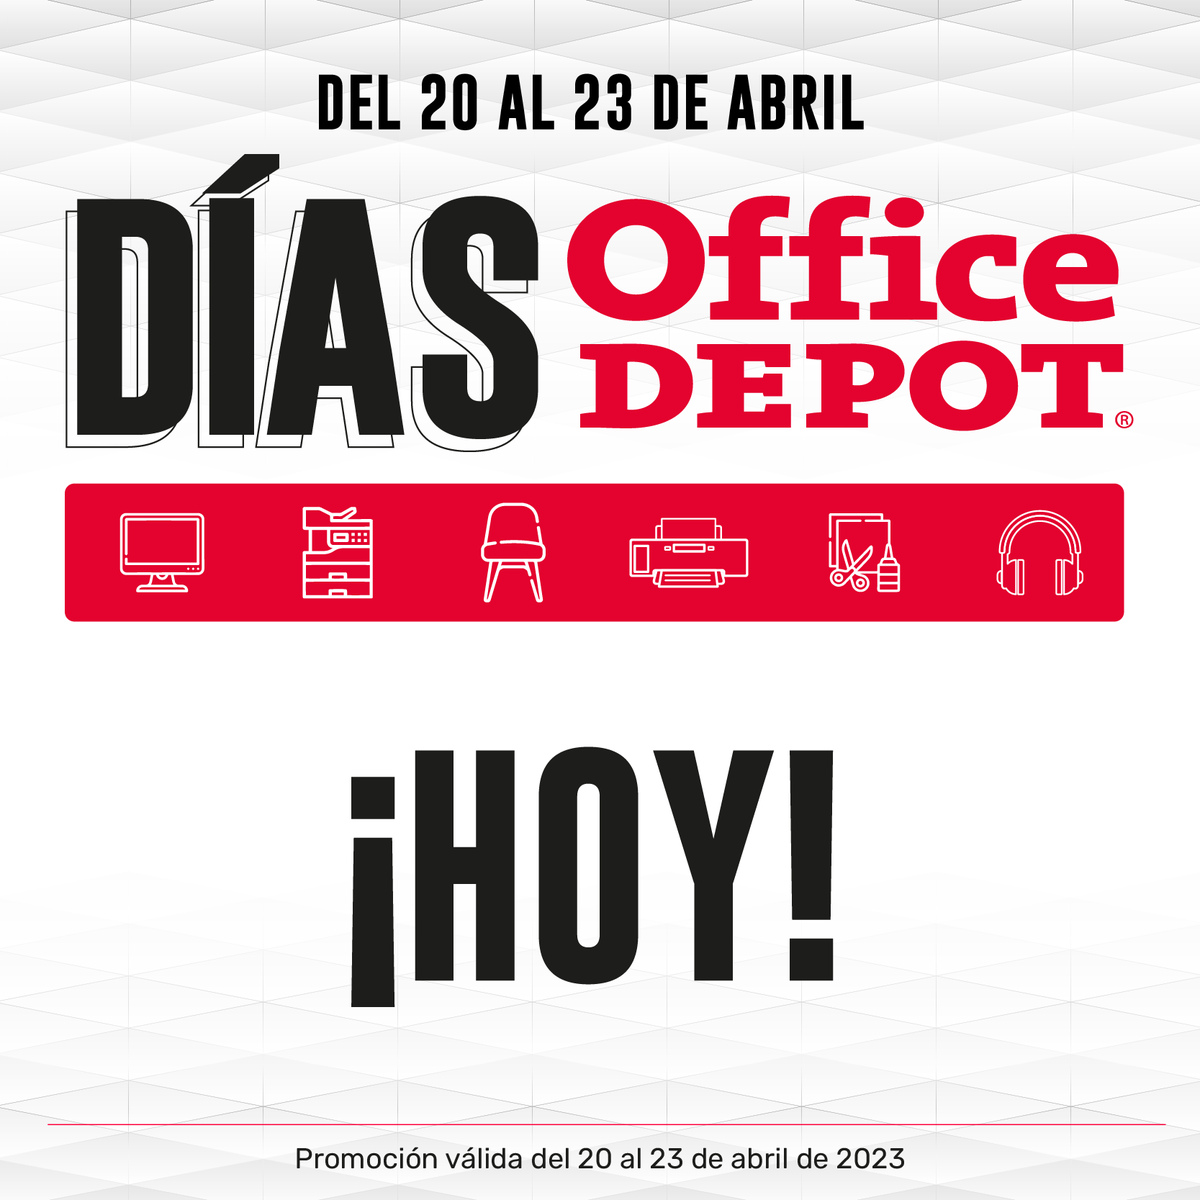 Office Depot El Salvador (@OfficeDepotSV) / Twitter